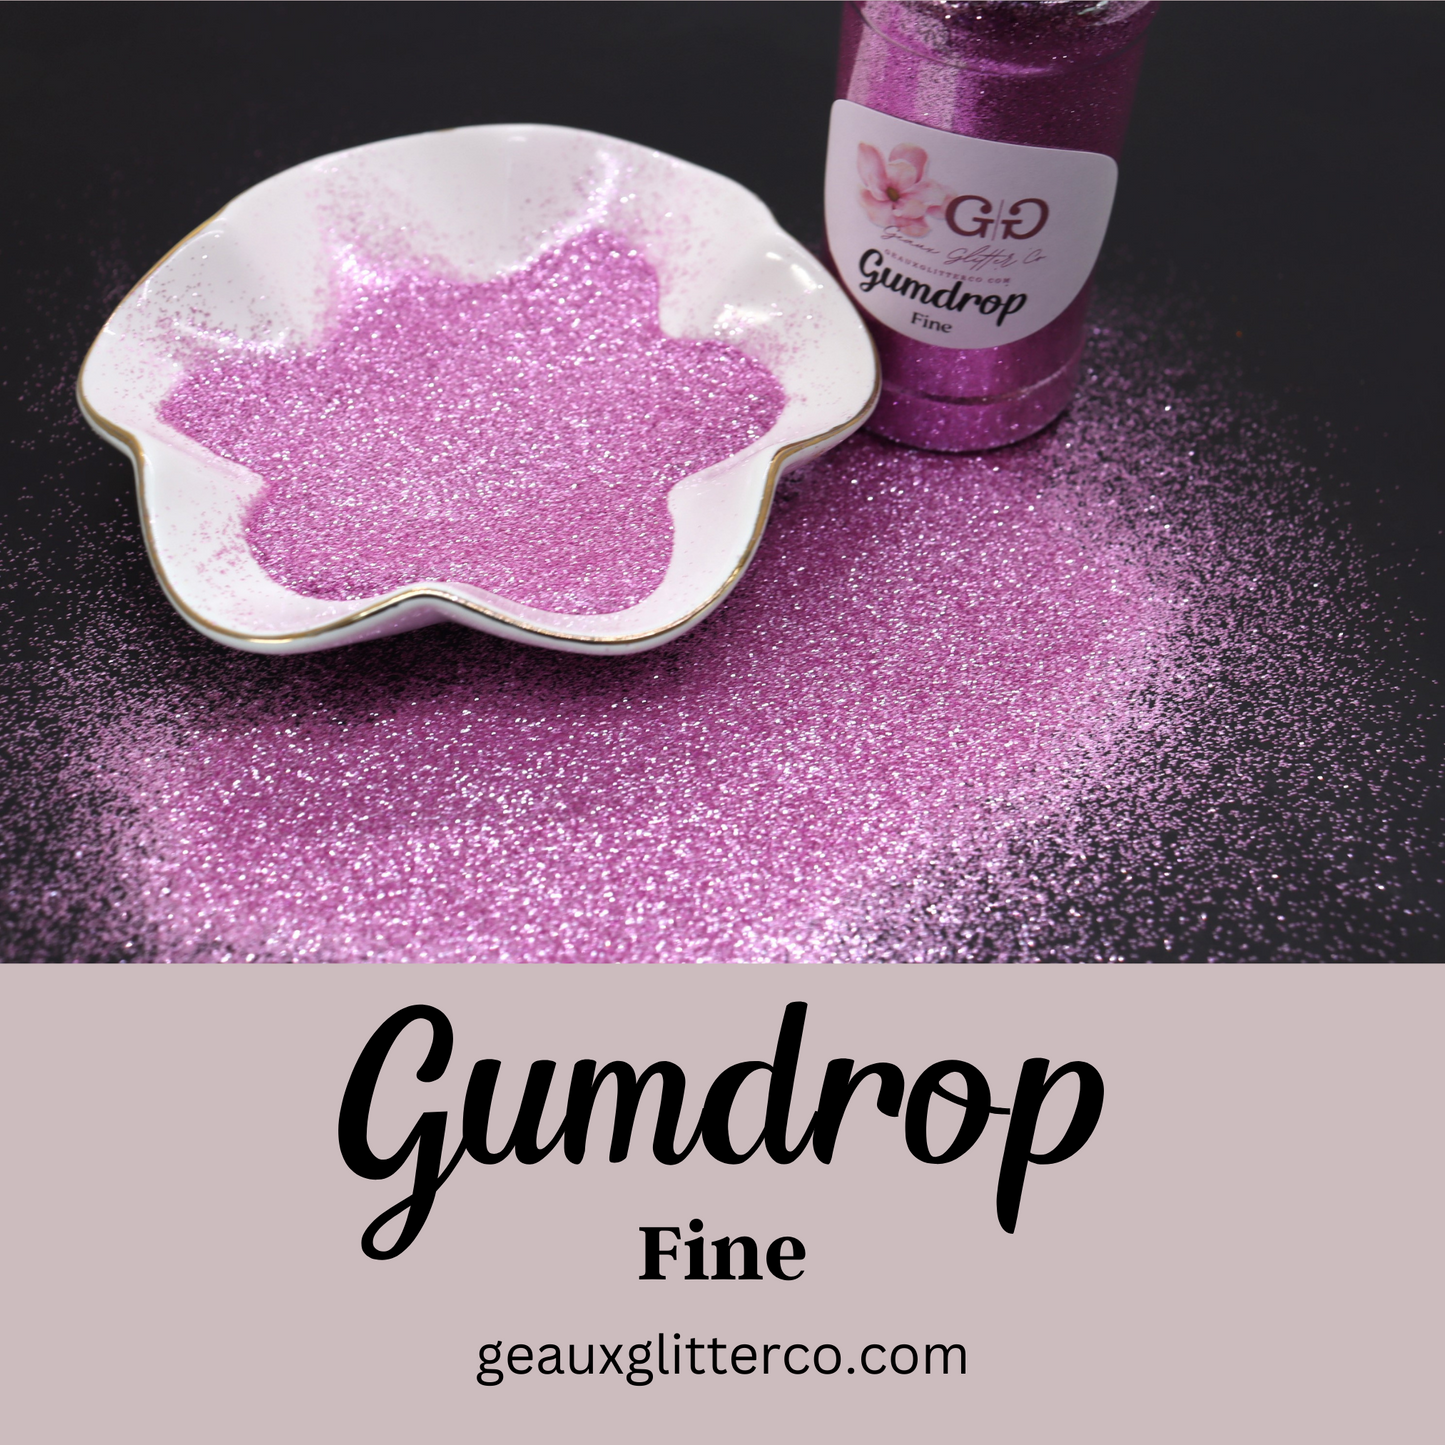 Gumdrop Fine